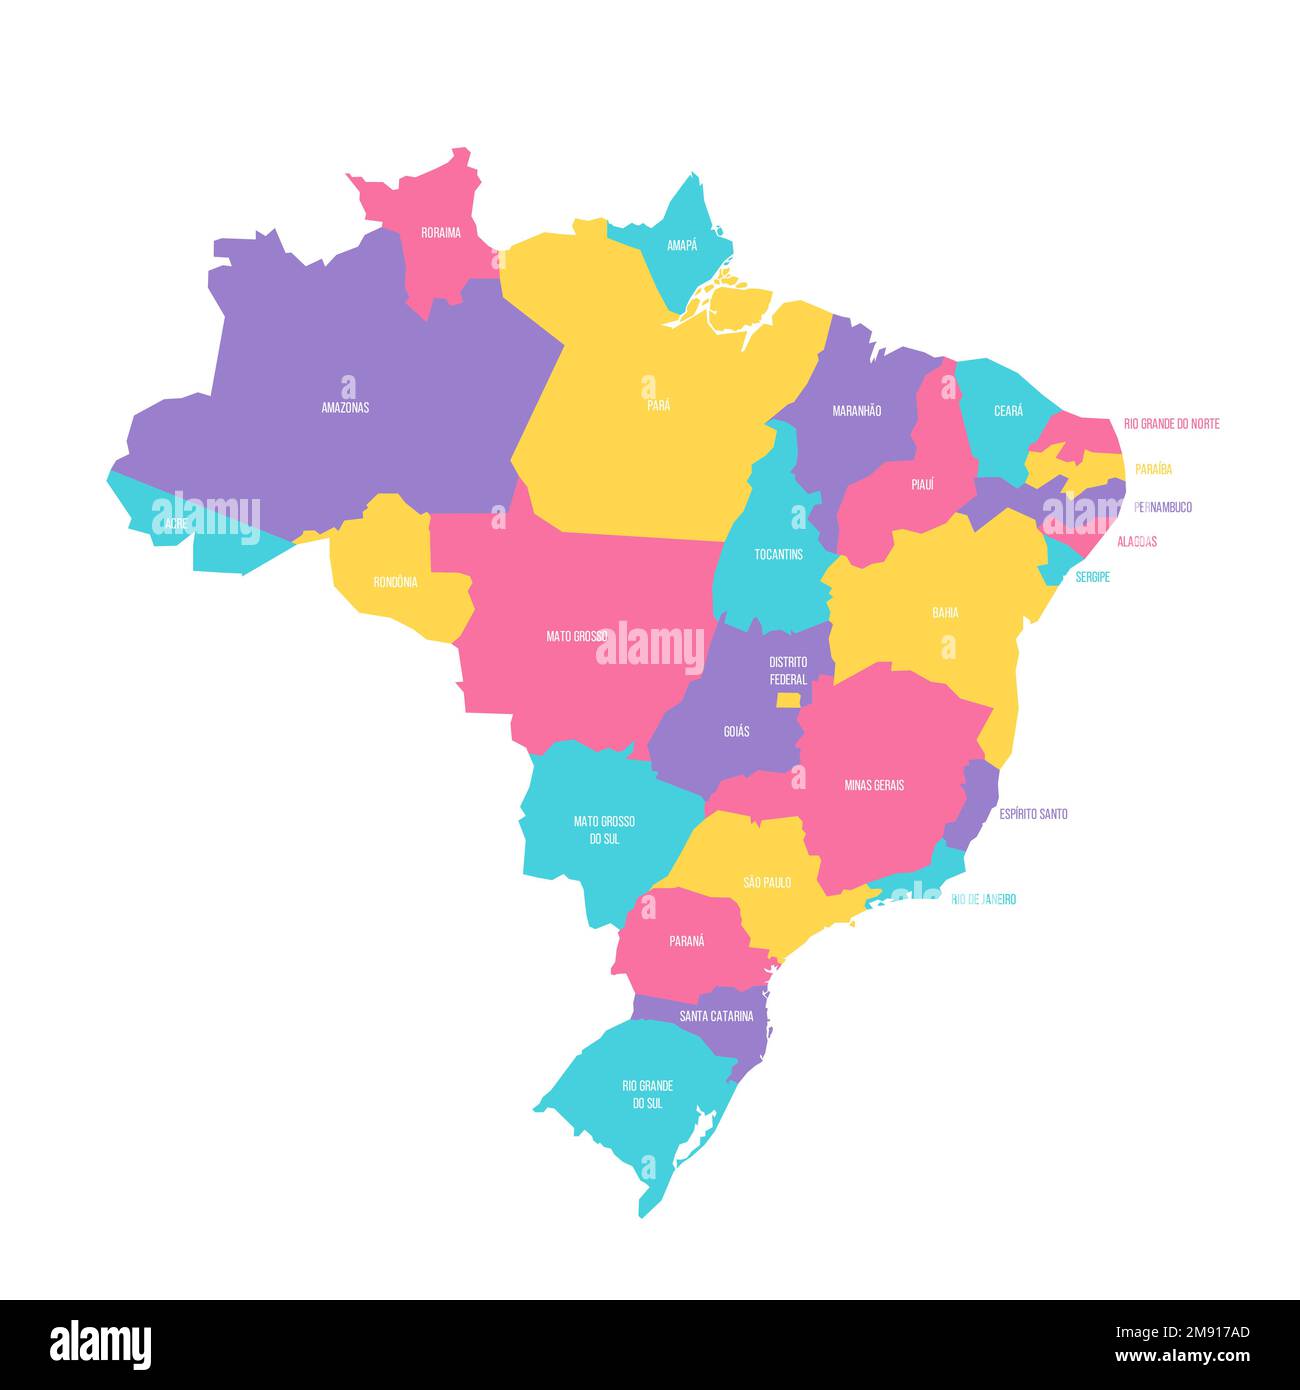 Politische Karte Brasiliens der Verwaltungsabteilungen - Föderative Einheiten Brasiliens. Farbenfrohe Vektorkarte mit Beschriftungen. Stock Vektor